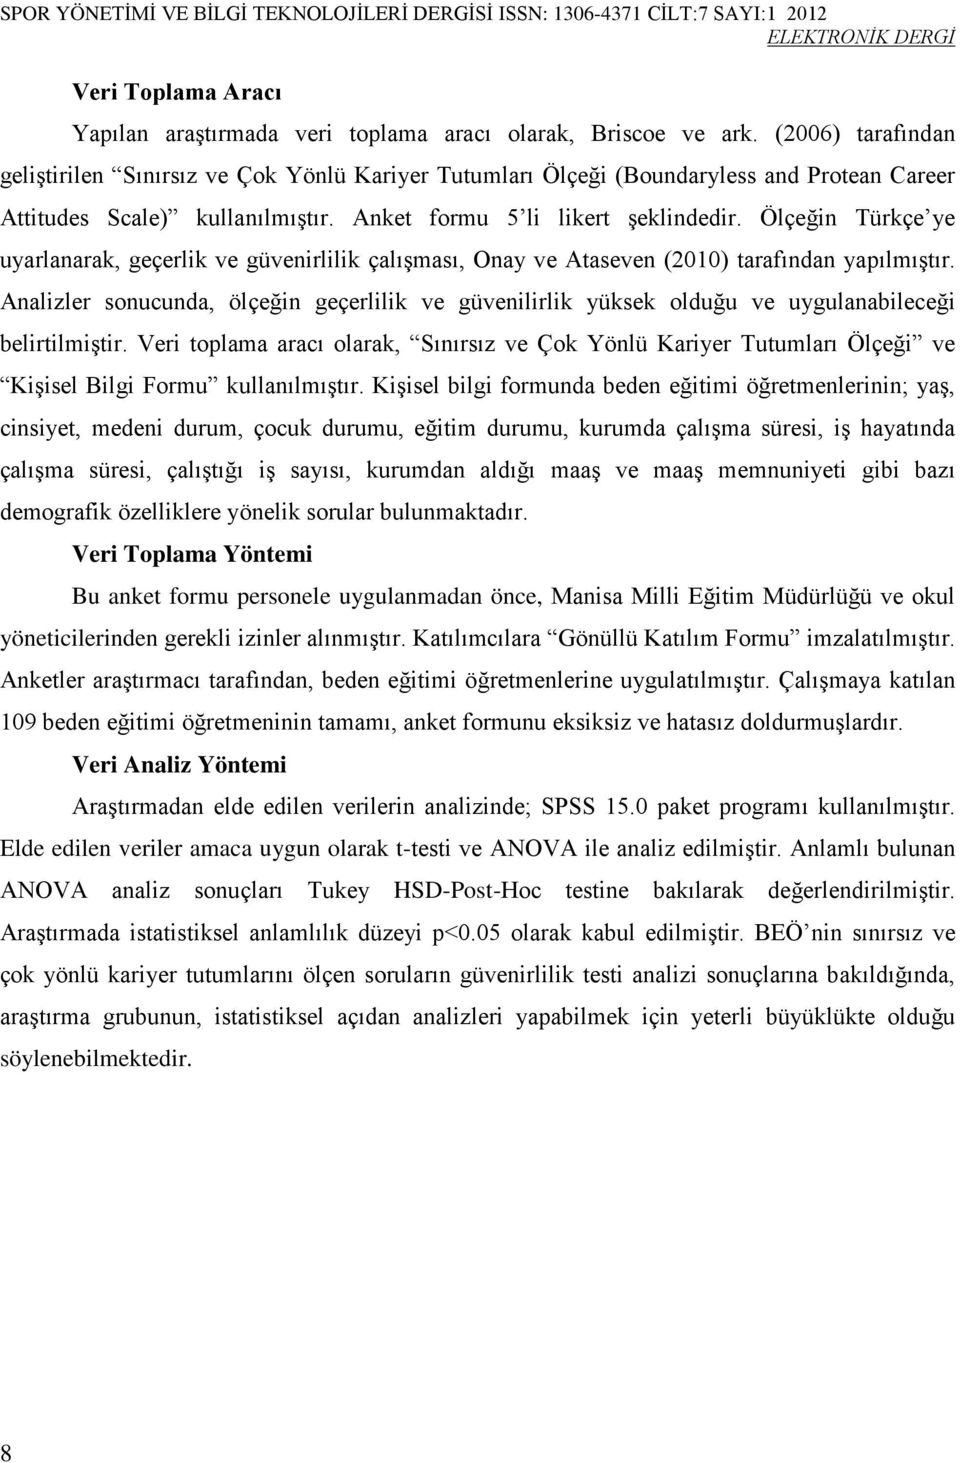 Ölçeğin Türkçe ye uyarlanarak, geçerlik ve güvenirlilik çalışması, Onay ve Ataseven (2010) tarafından yapılmıştır.